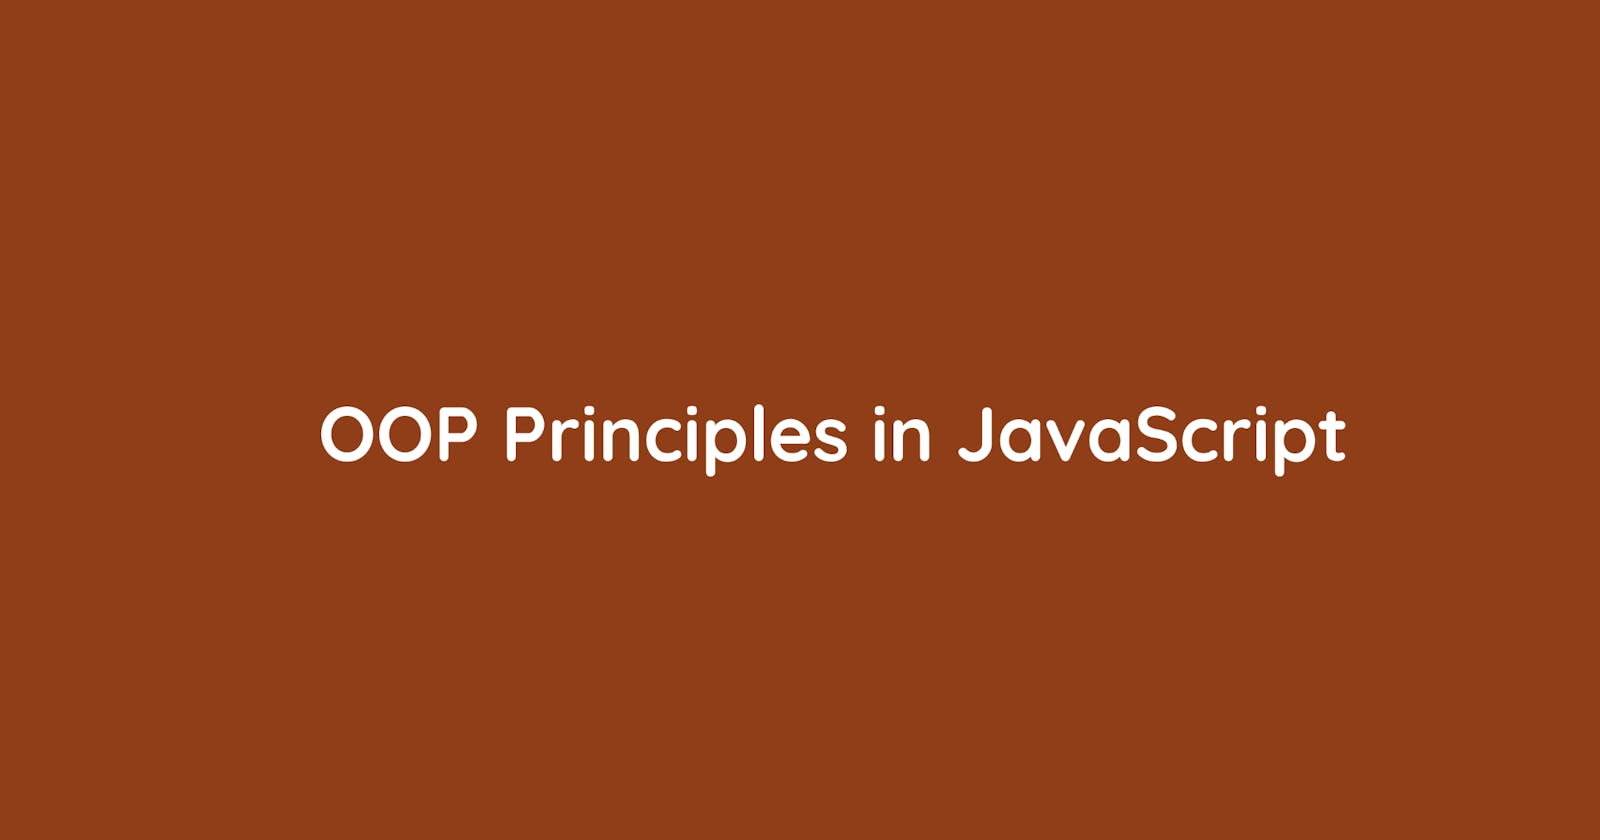 OOP Principles, JavaScript Perspective